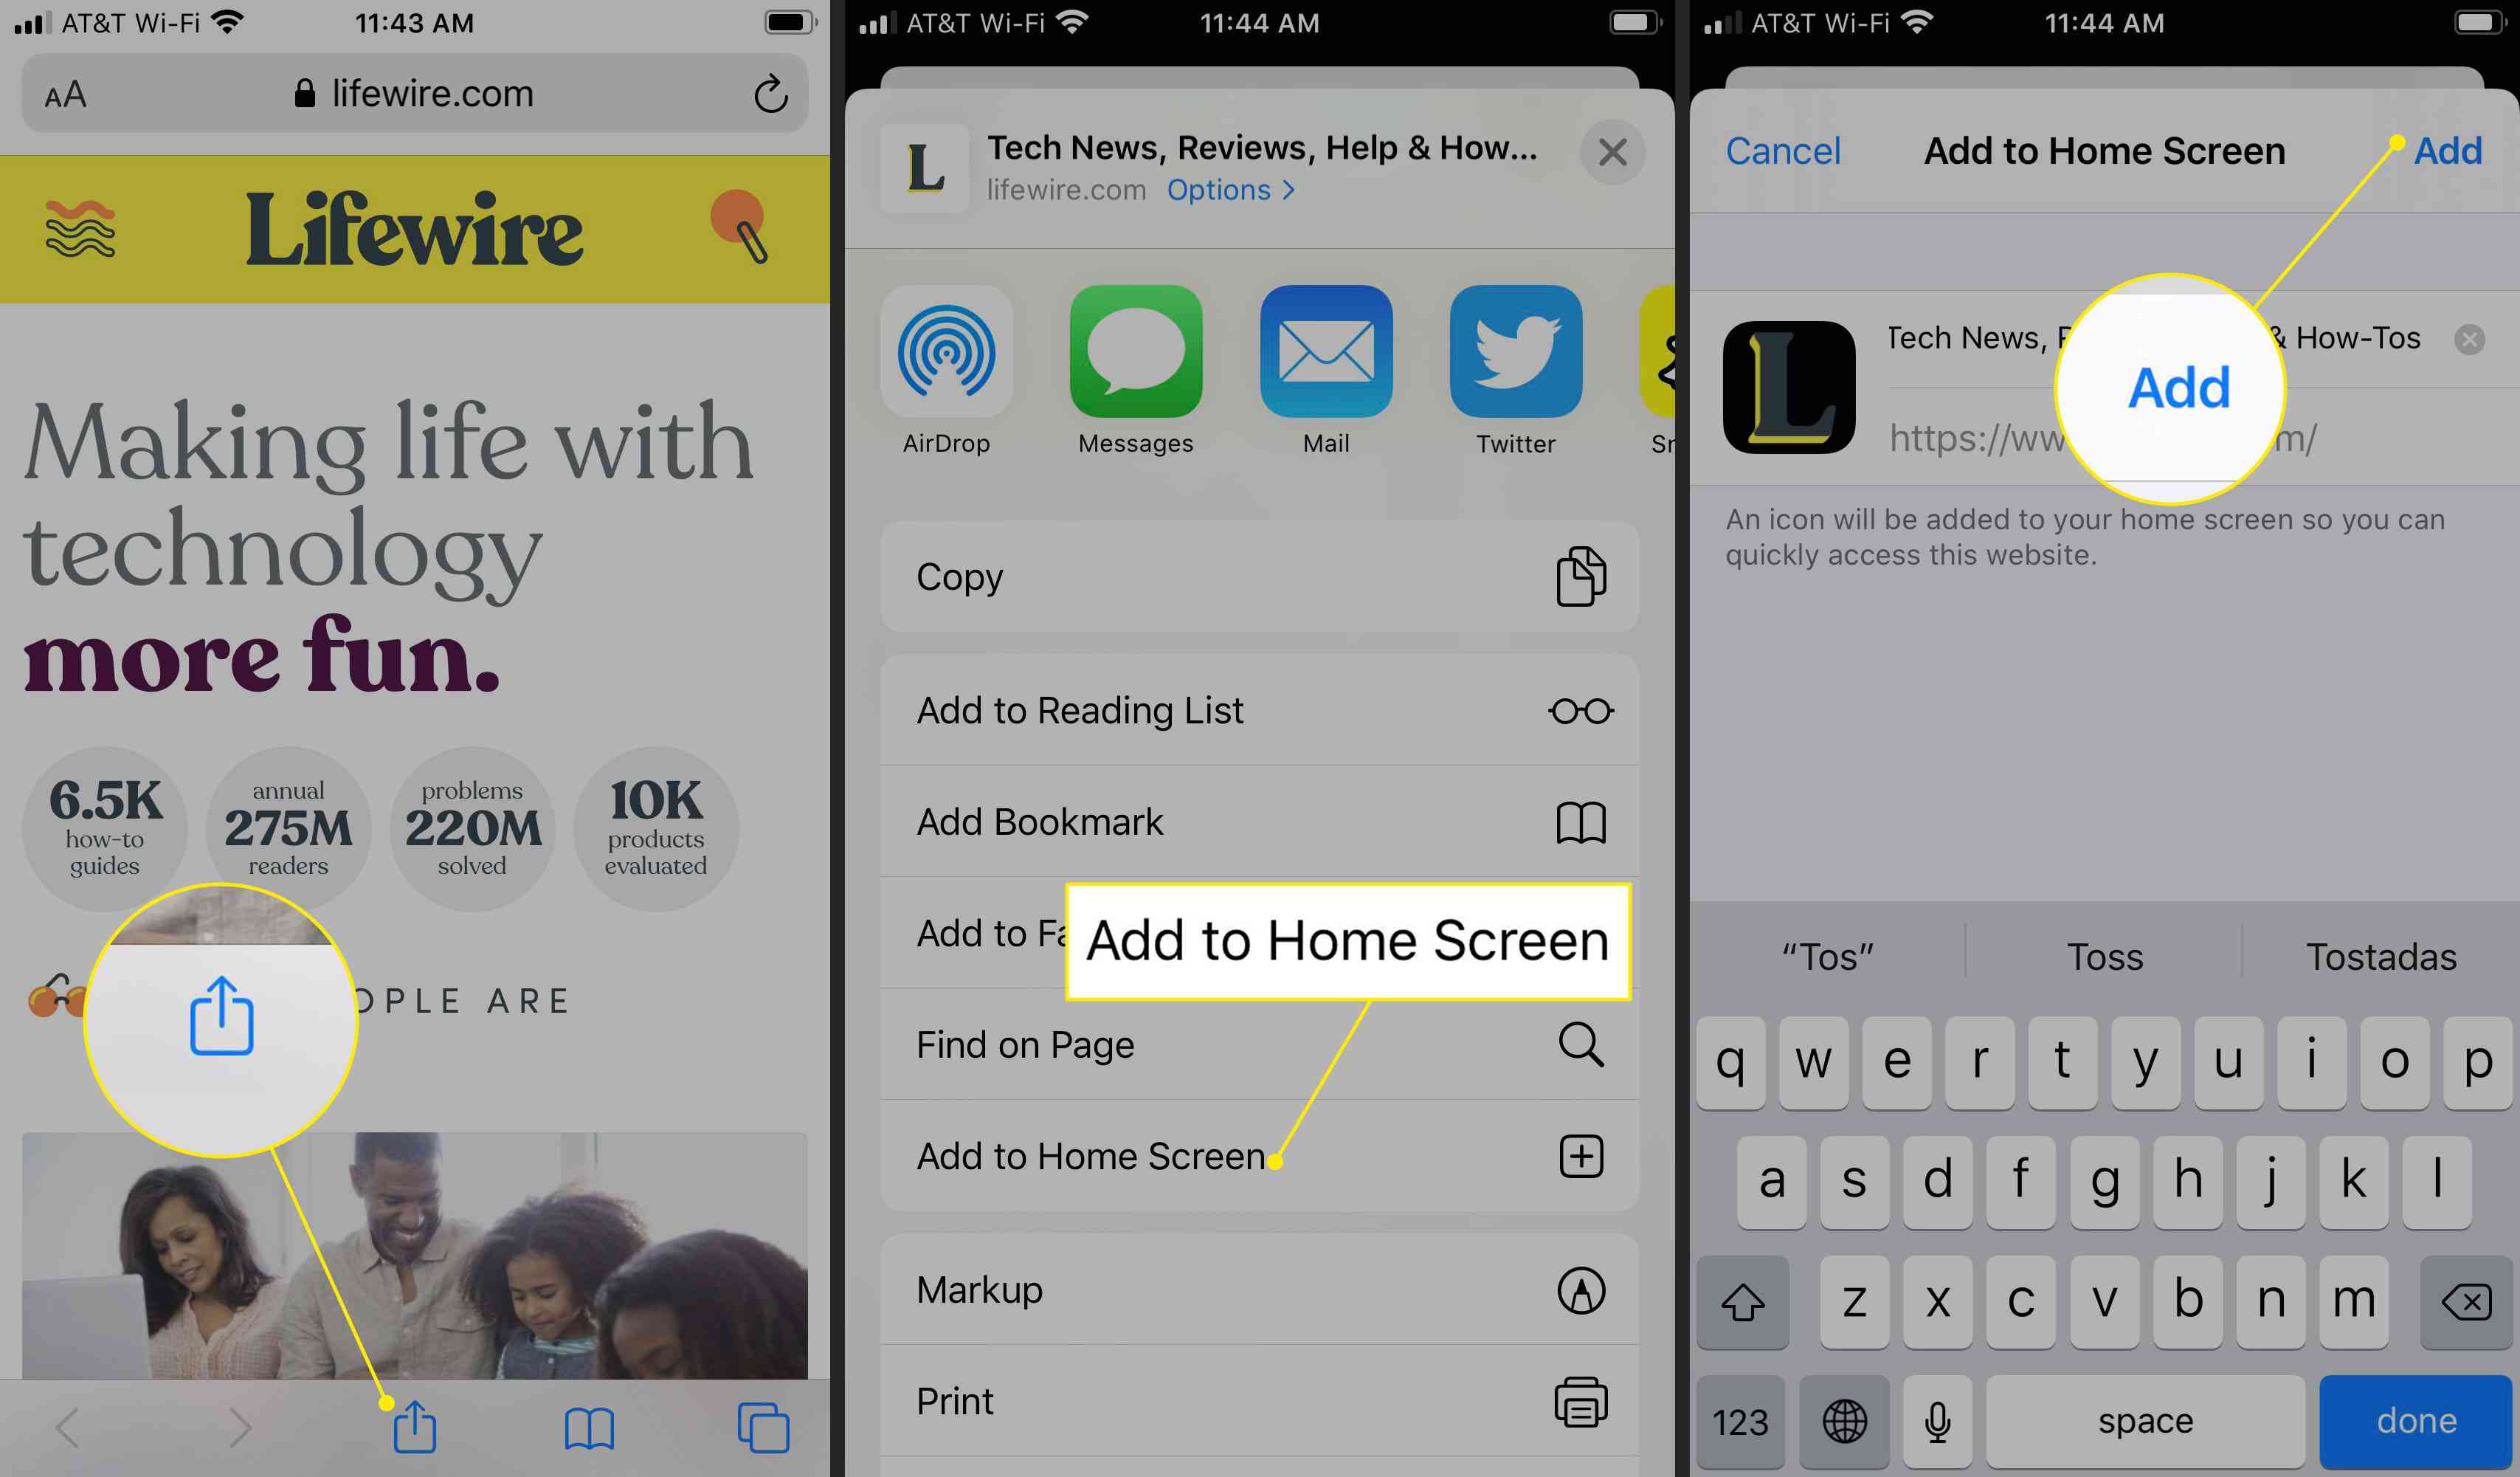 De opdrachten Delen, Toevoegen aan startscherm en Toevoegen in Safari voor iOS